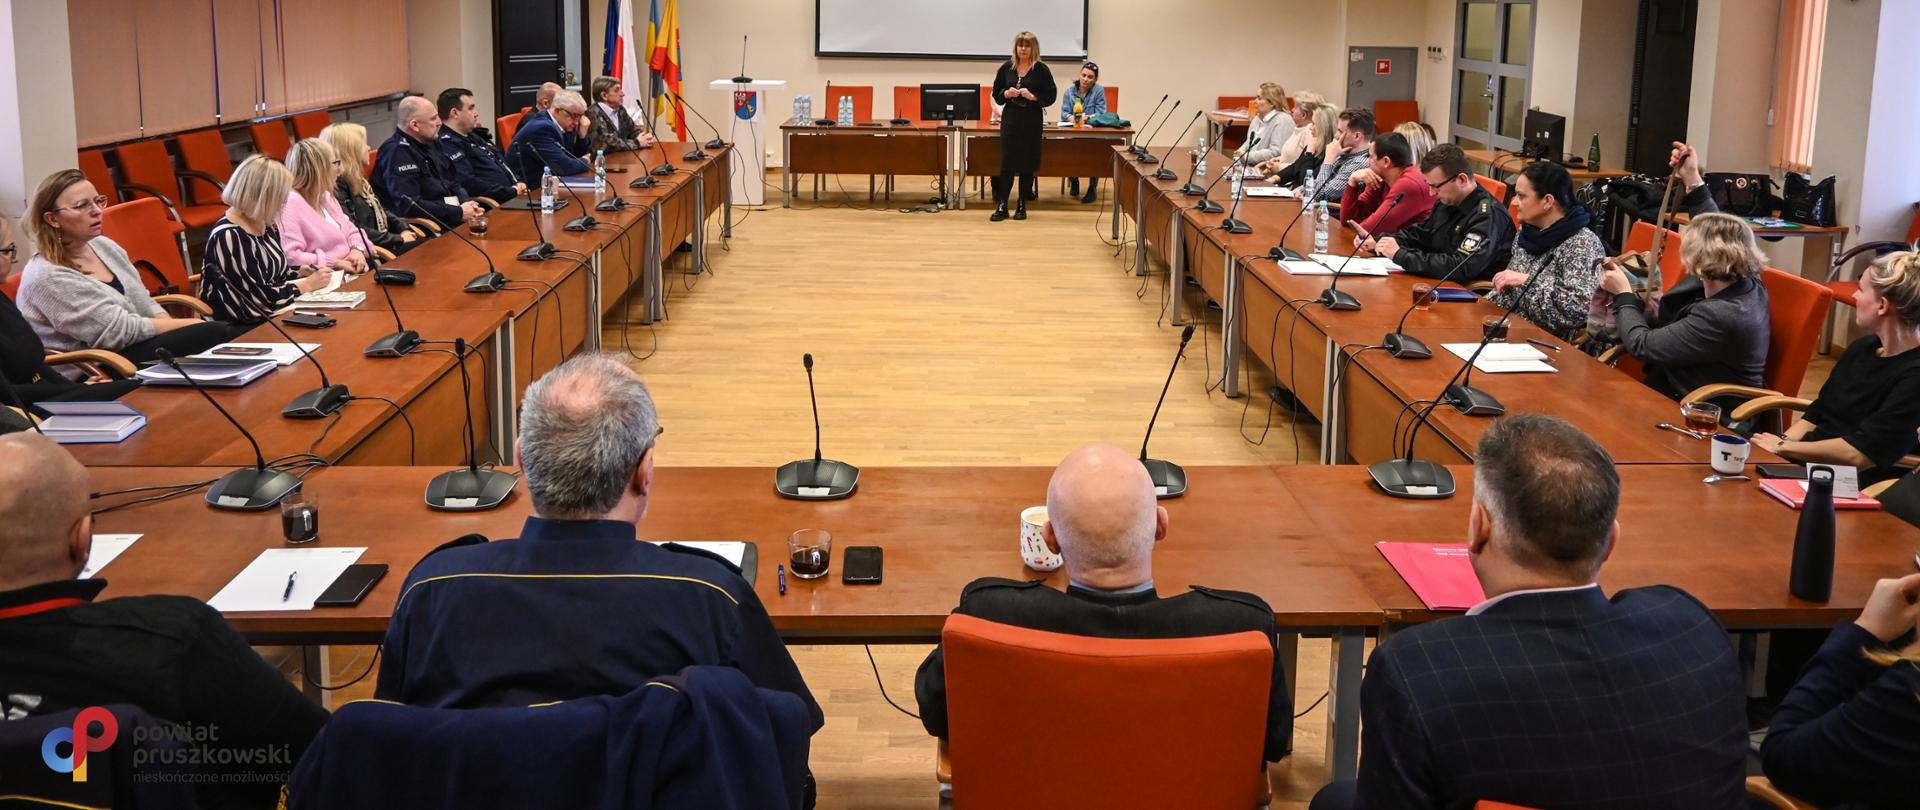 Spotkanie instytucji zajmujących się przeciwdziałaniem przemocy w rodzinie w powiecie pruszkowskim